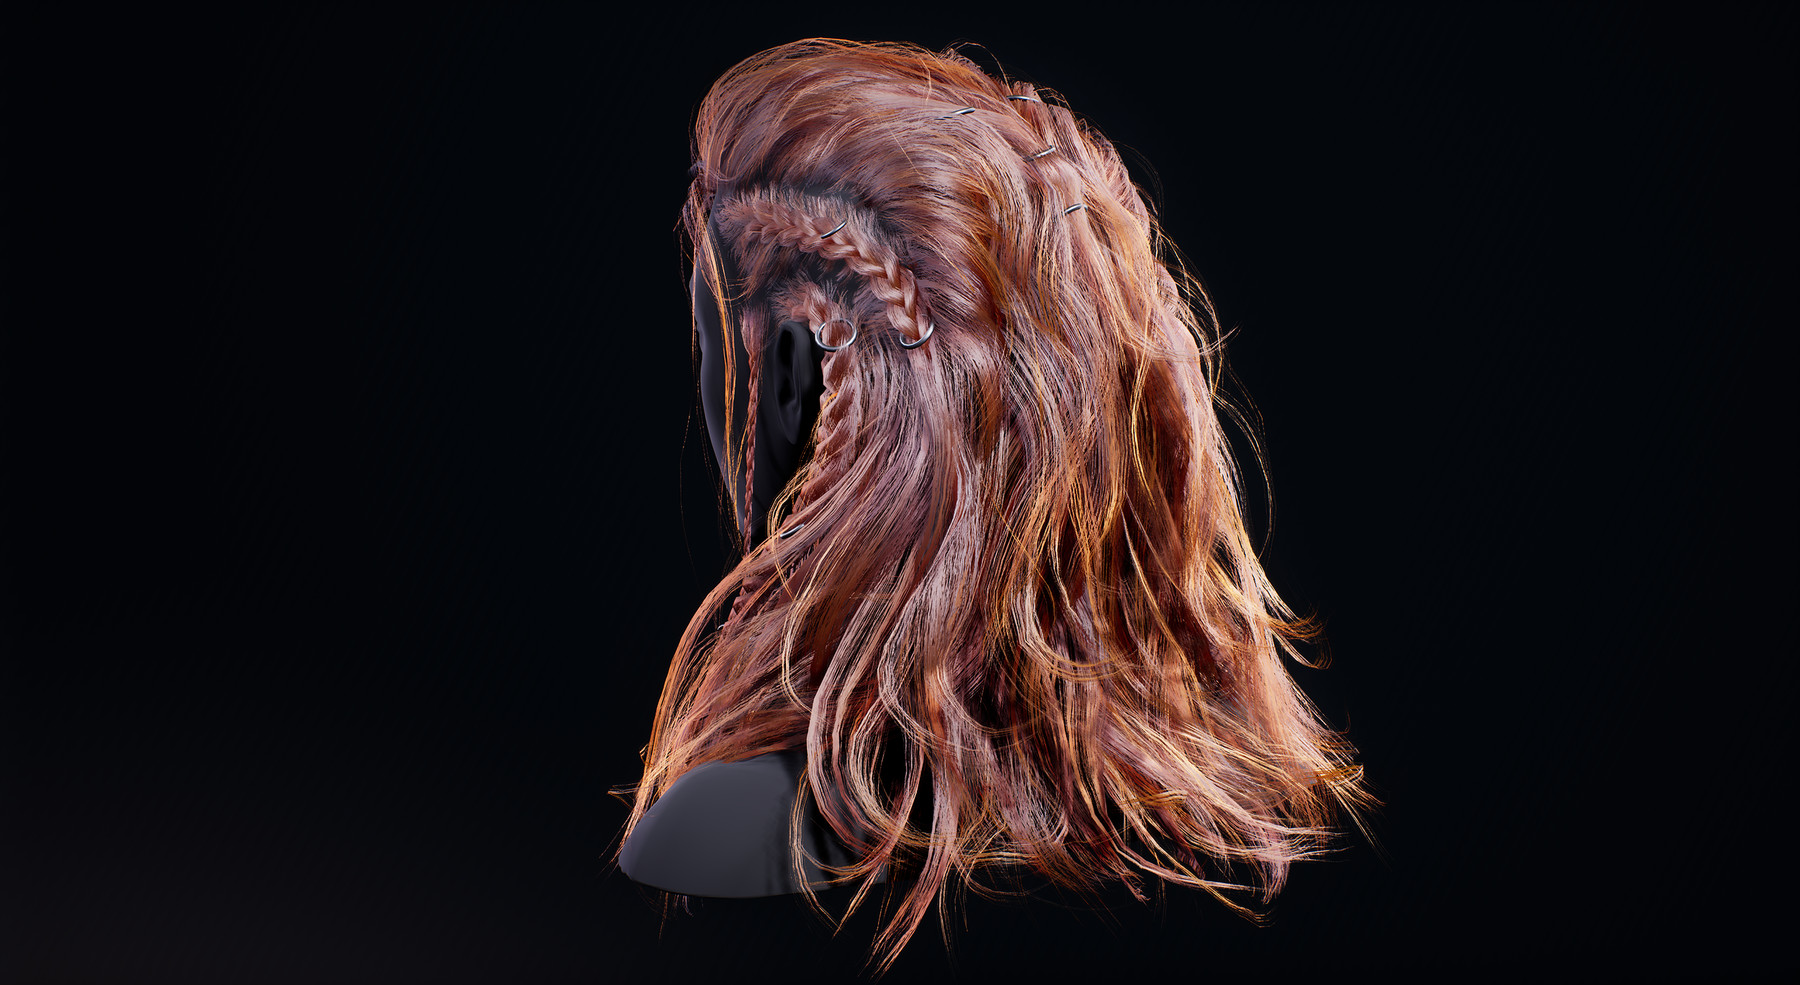 ArtStation - Female Braided Hair viking style